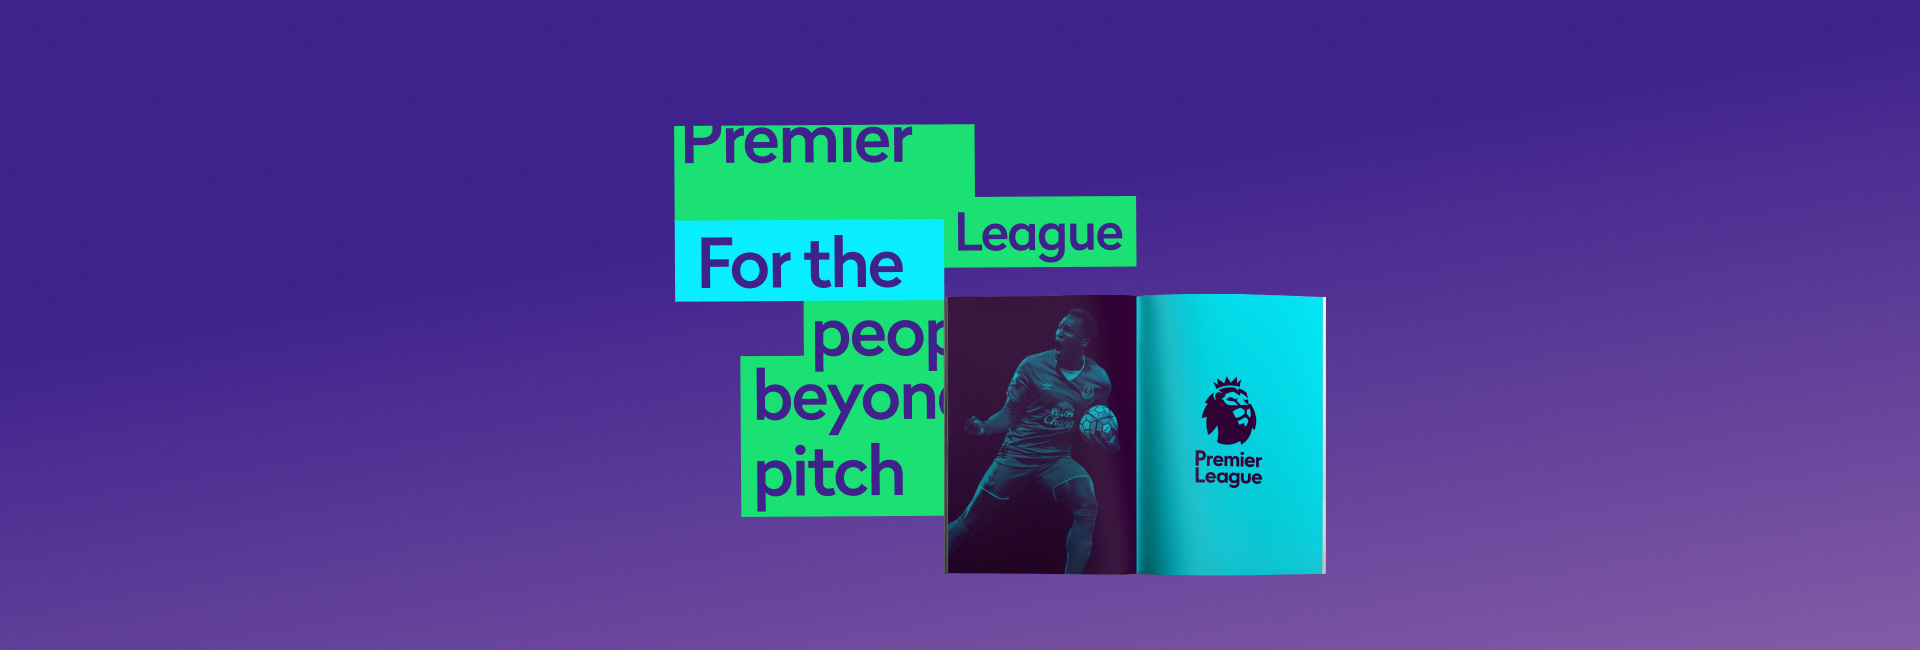 Premier League năng động trên mọi nền tảng với custom brand typeface ấn tượng